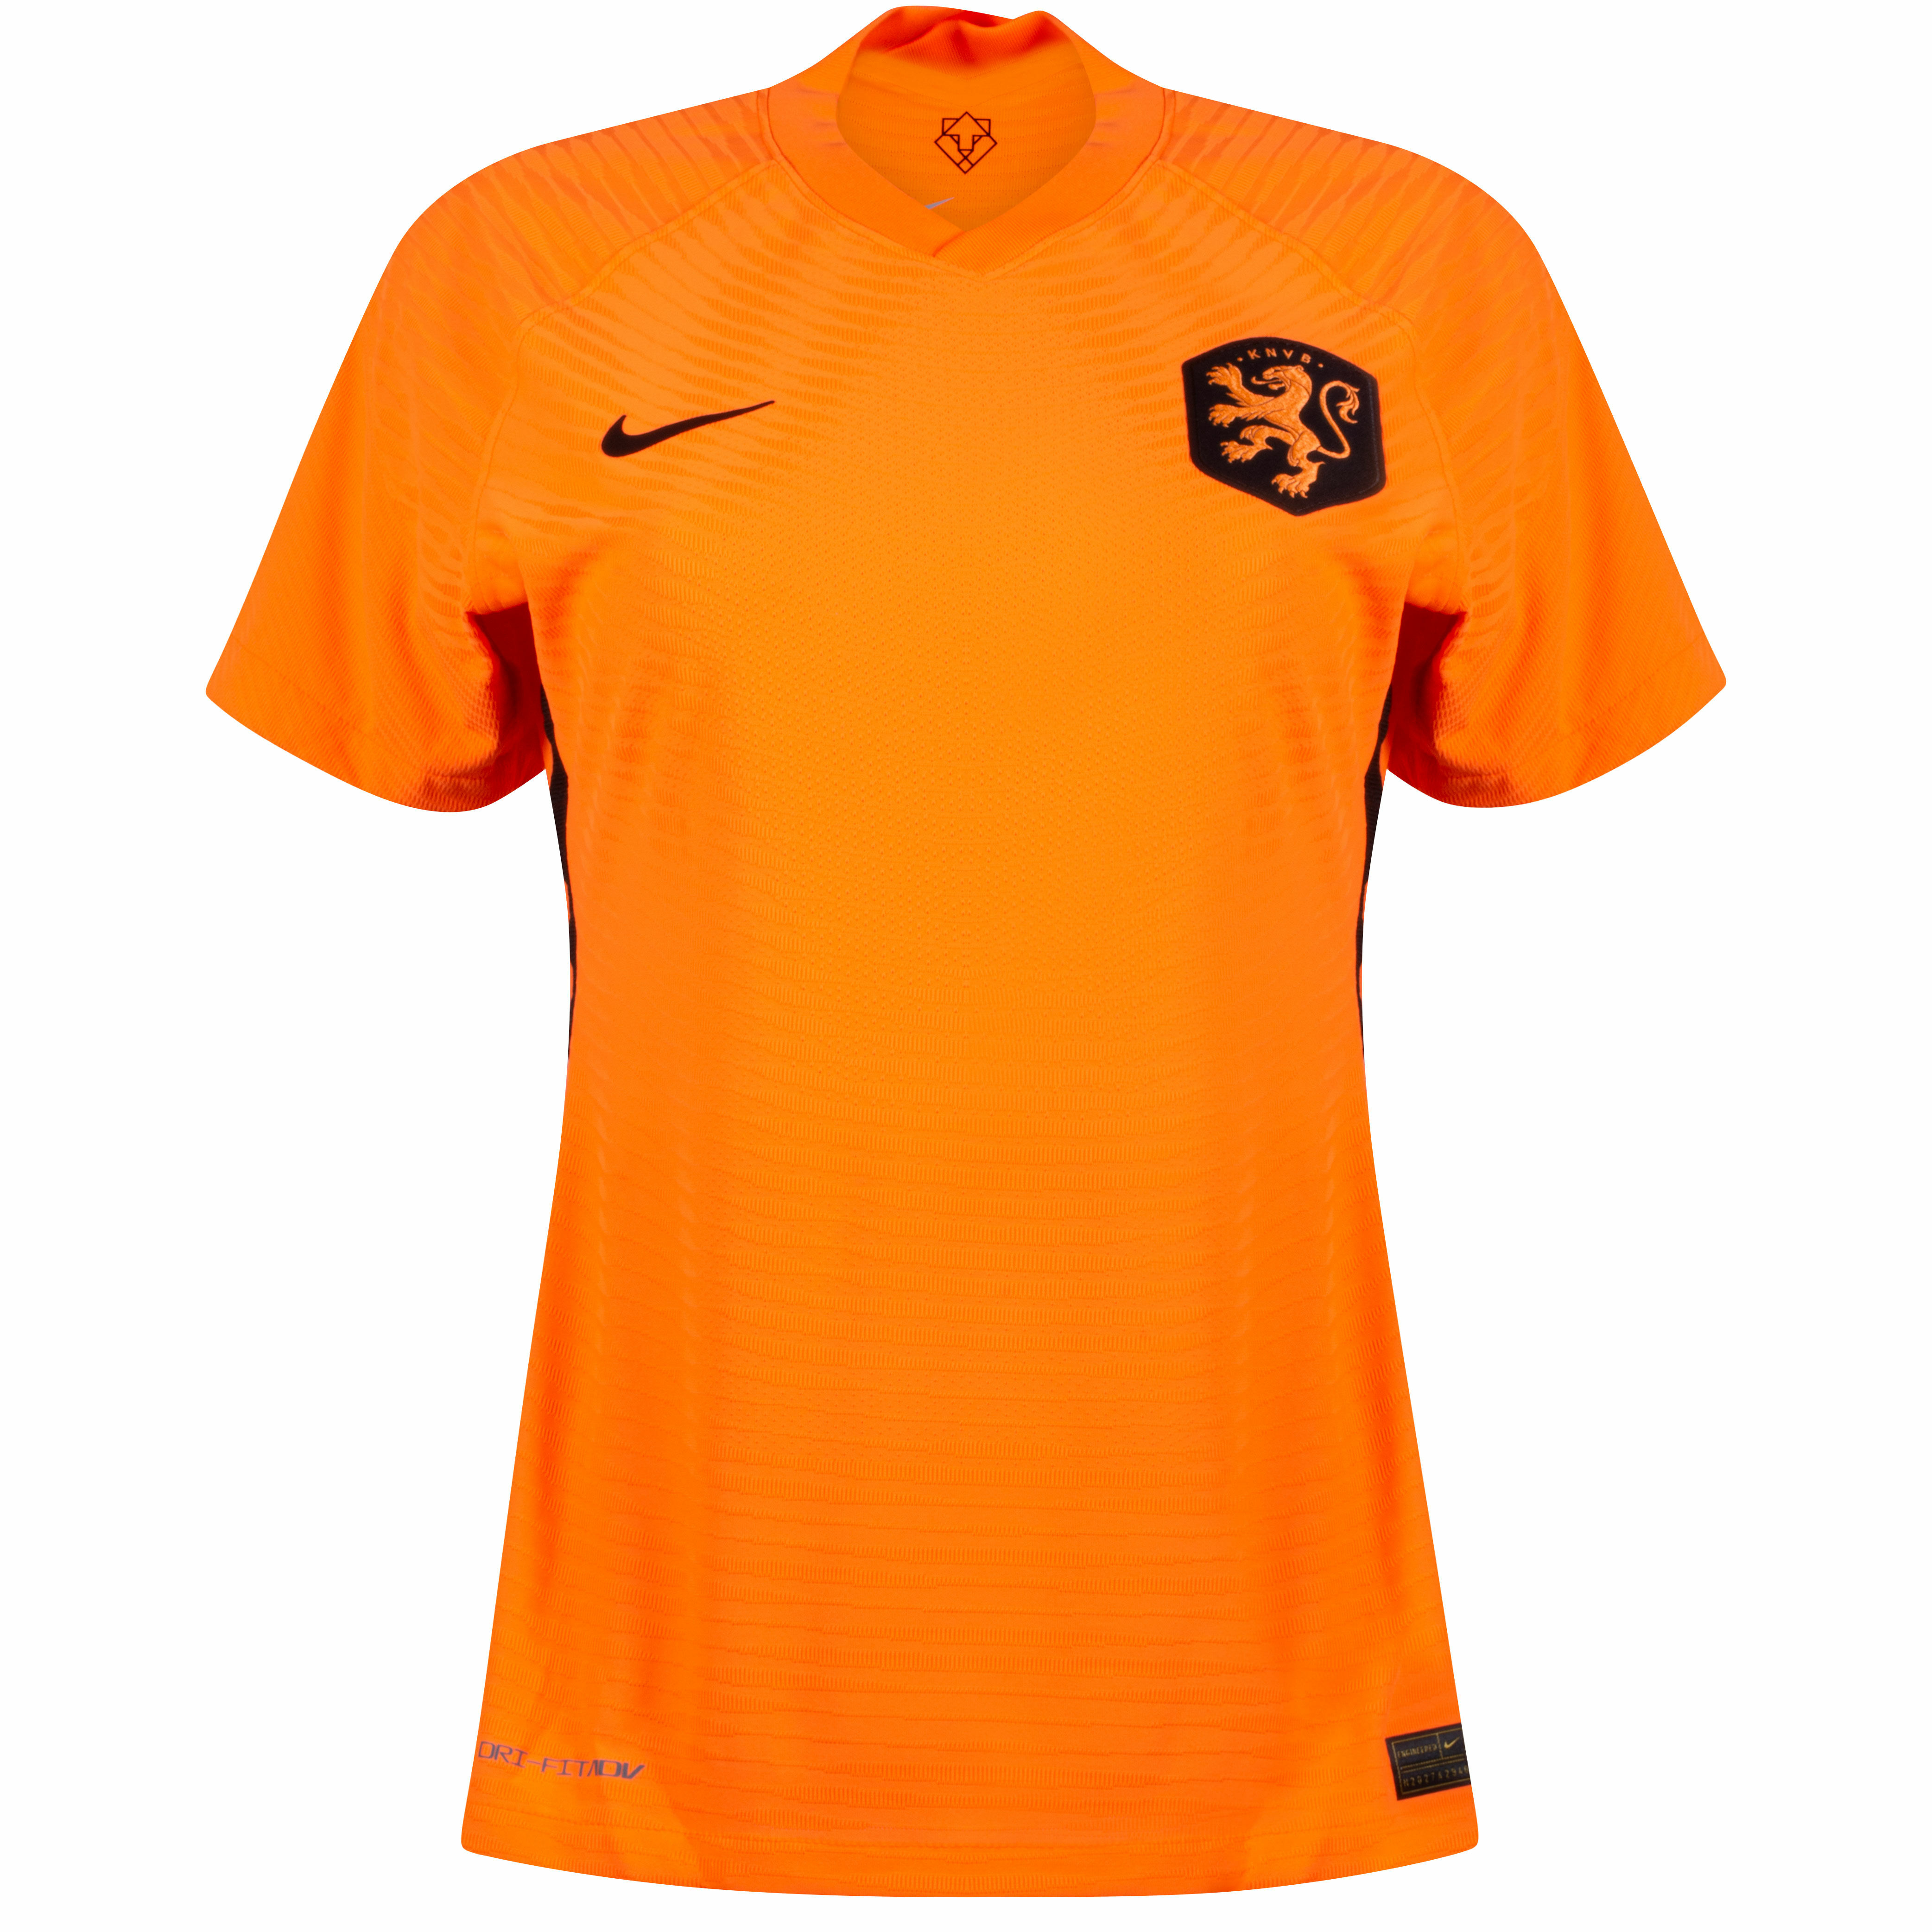 Nizozemí - Dres fotbalový "Vapor Match" dámský - oranžový, 2022, domácí